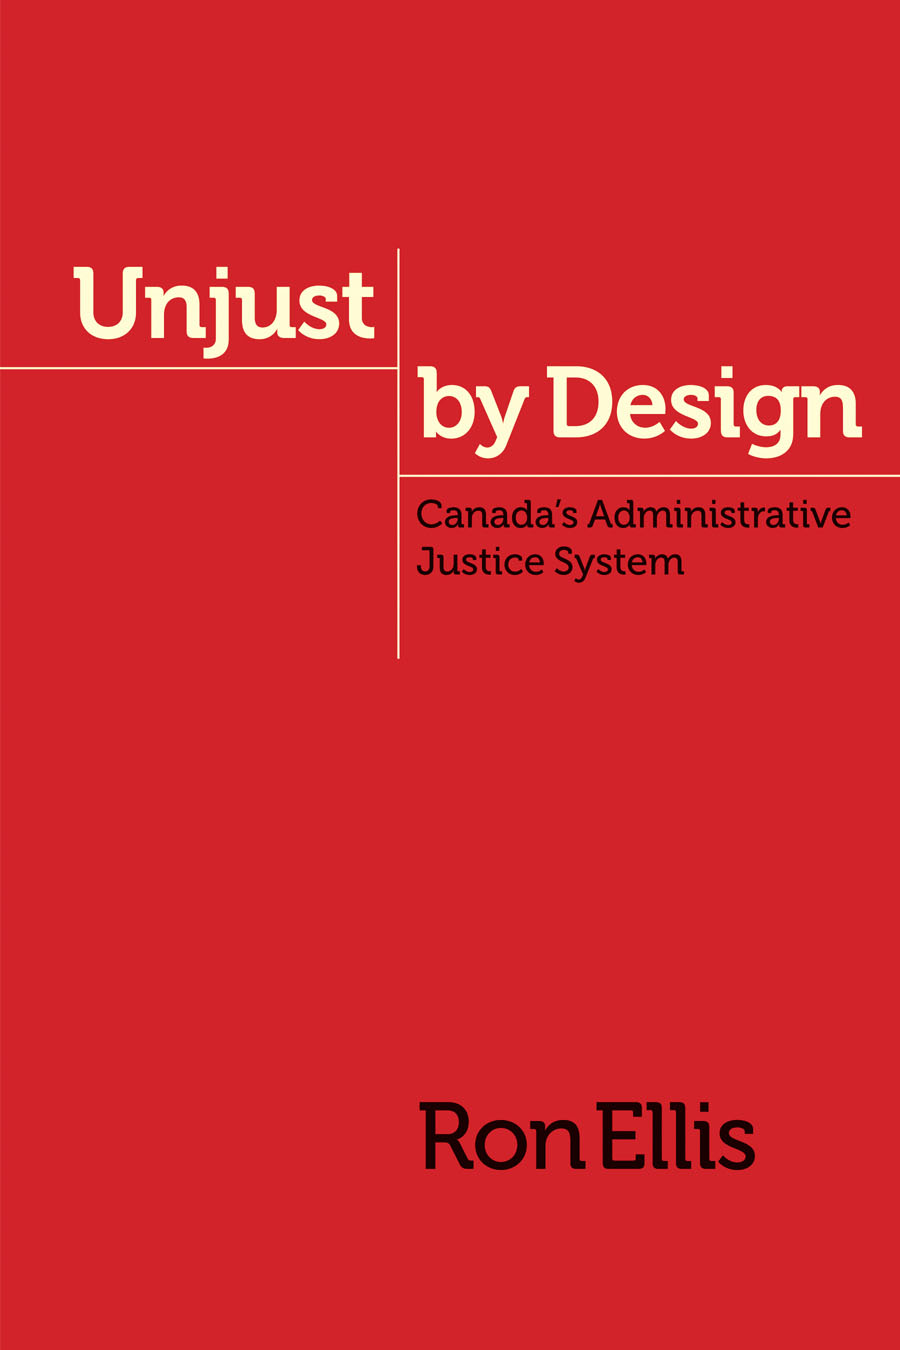 Unjust by Design by Ron Ellis